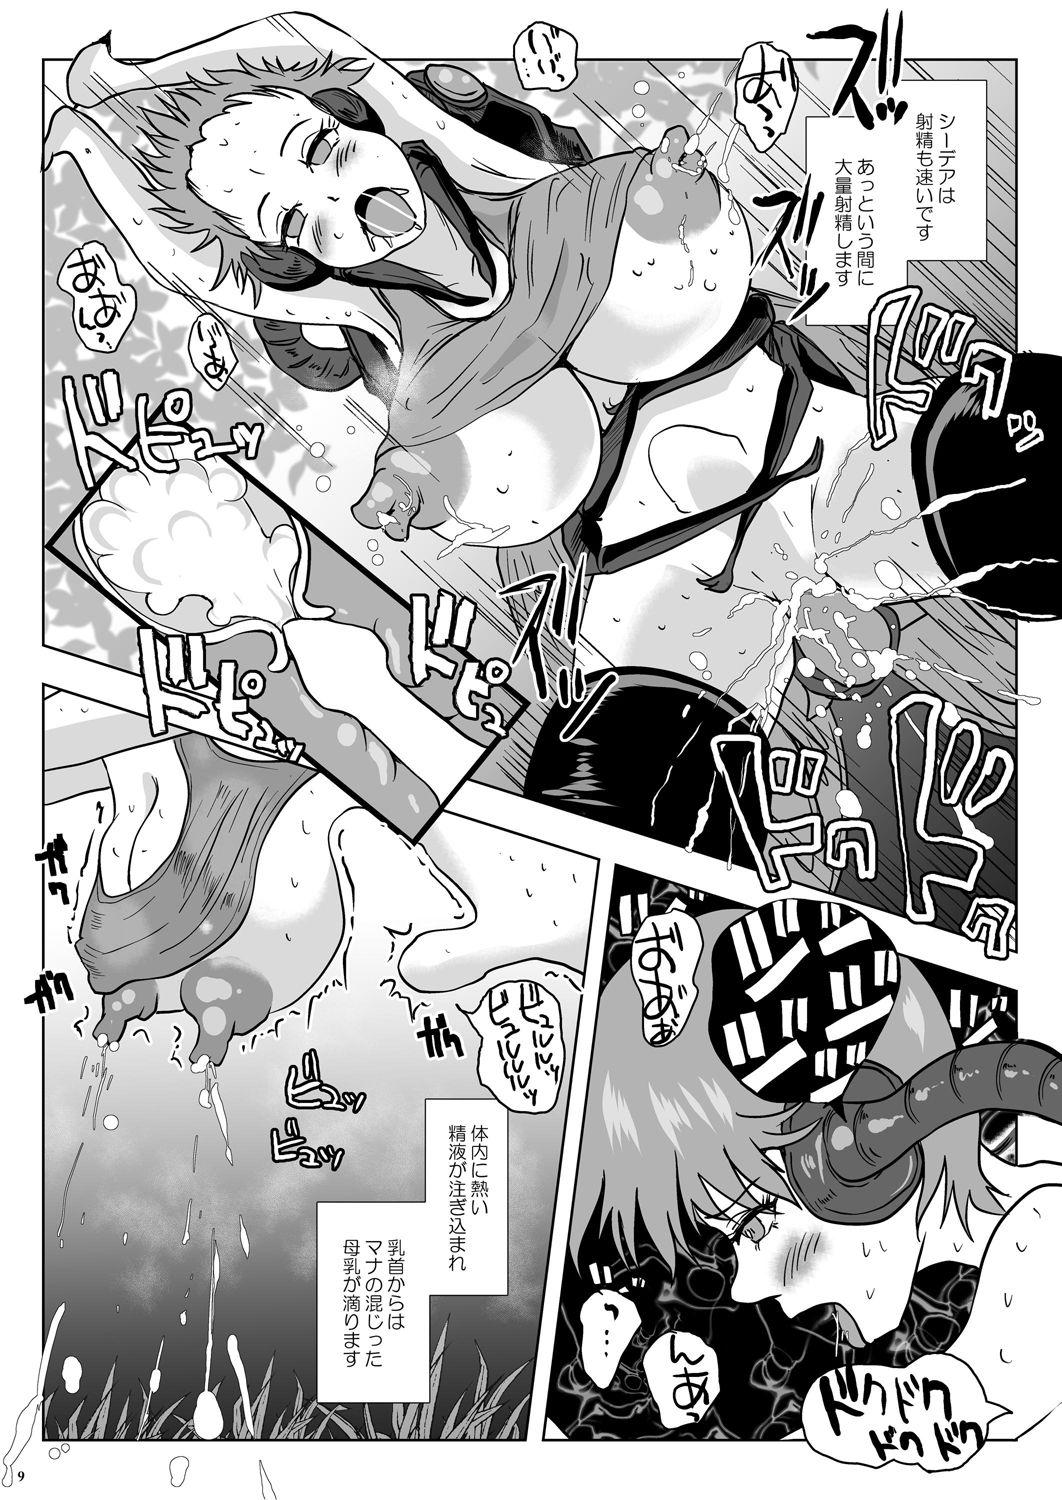 Handjob Go To Larvataurs #02 "Hokaku Chuunyuu Nakadashi Mushi no Miyako" Culos - Page 9